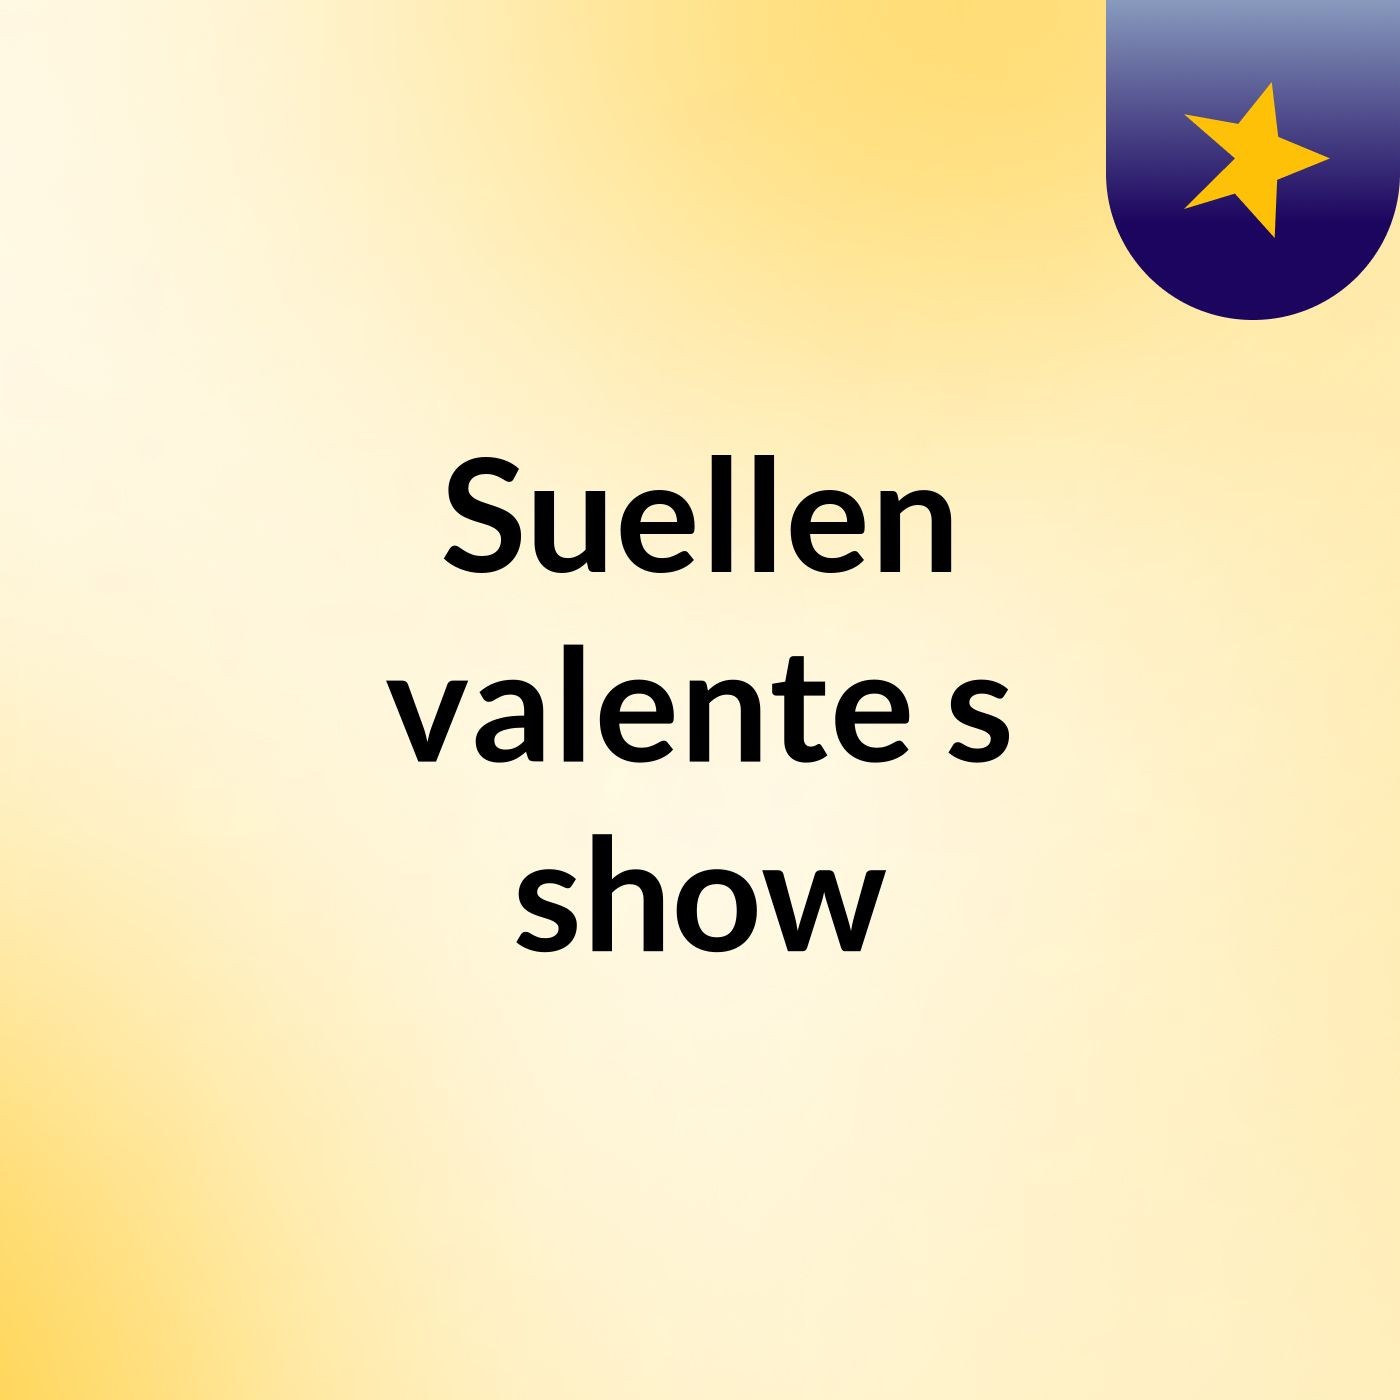 Suellen valente's show